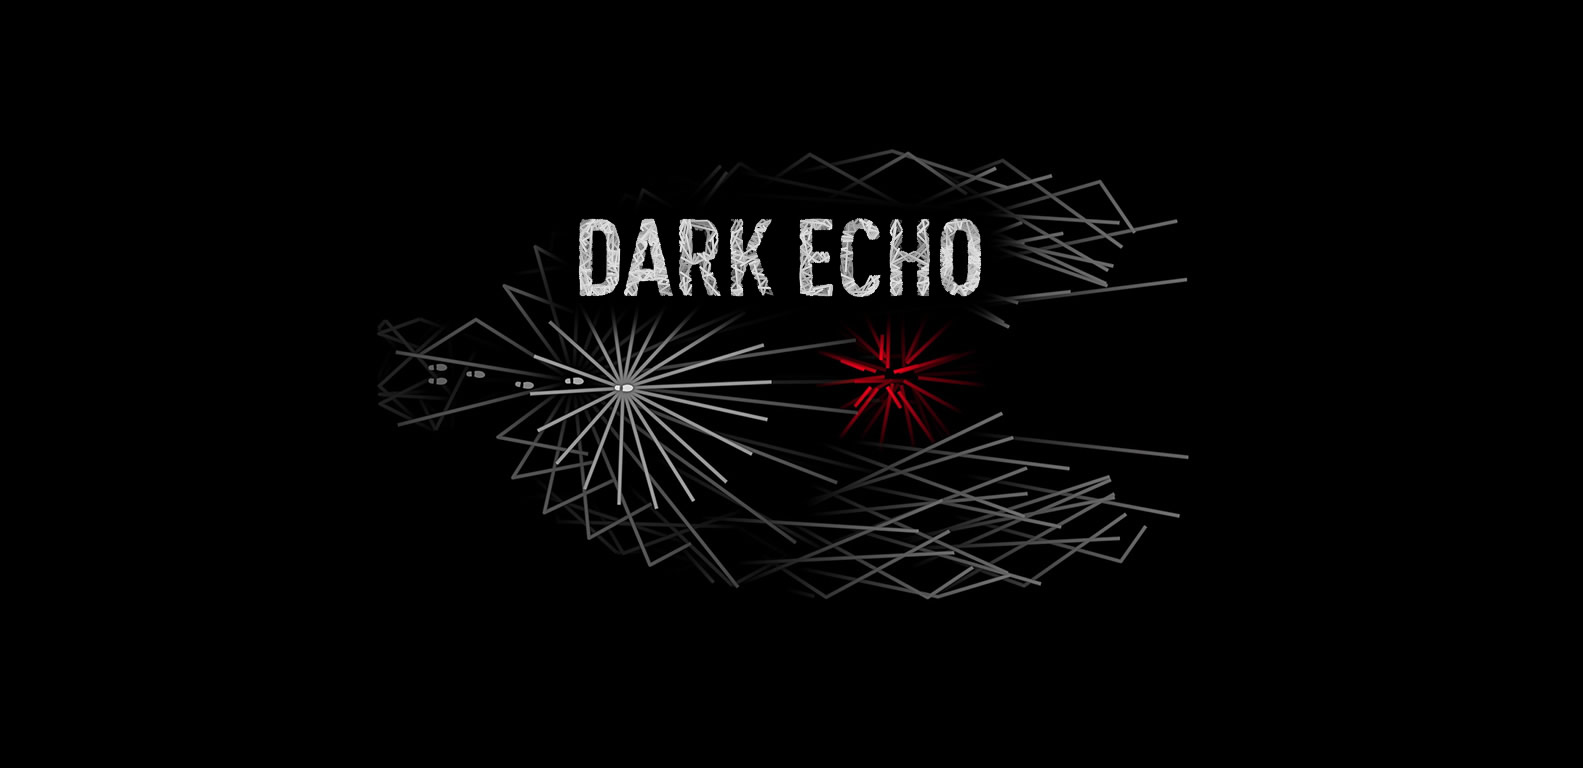 Dark Echo Backgrounds on Wallpapers Vista